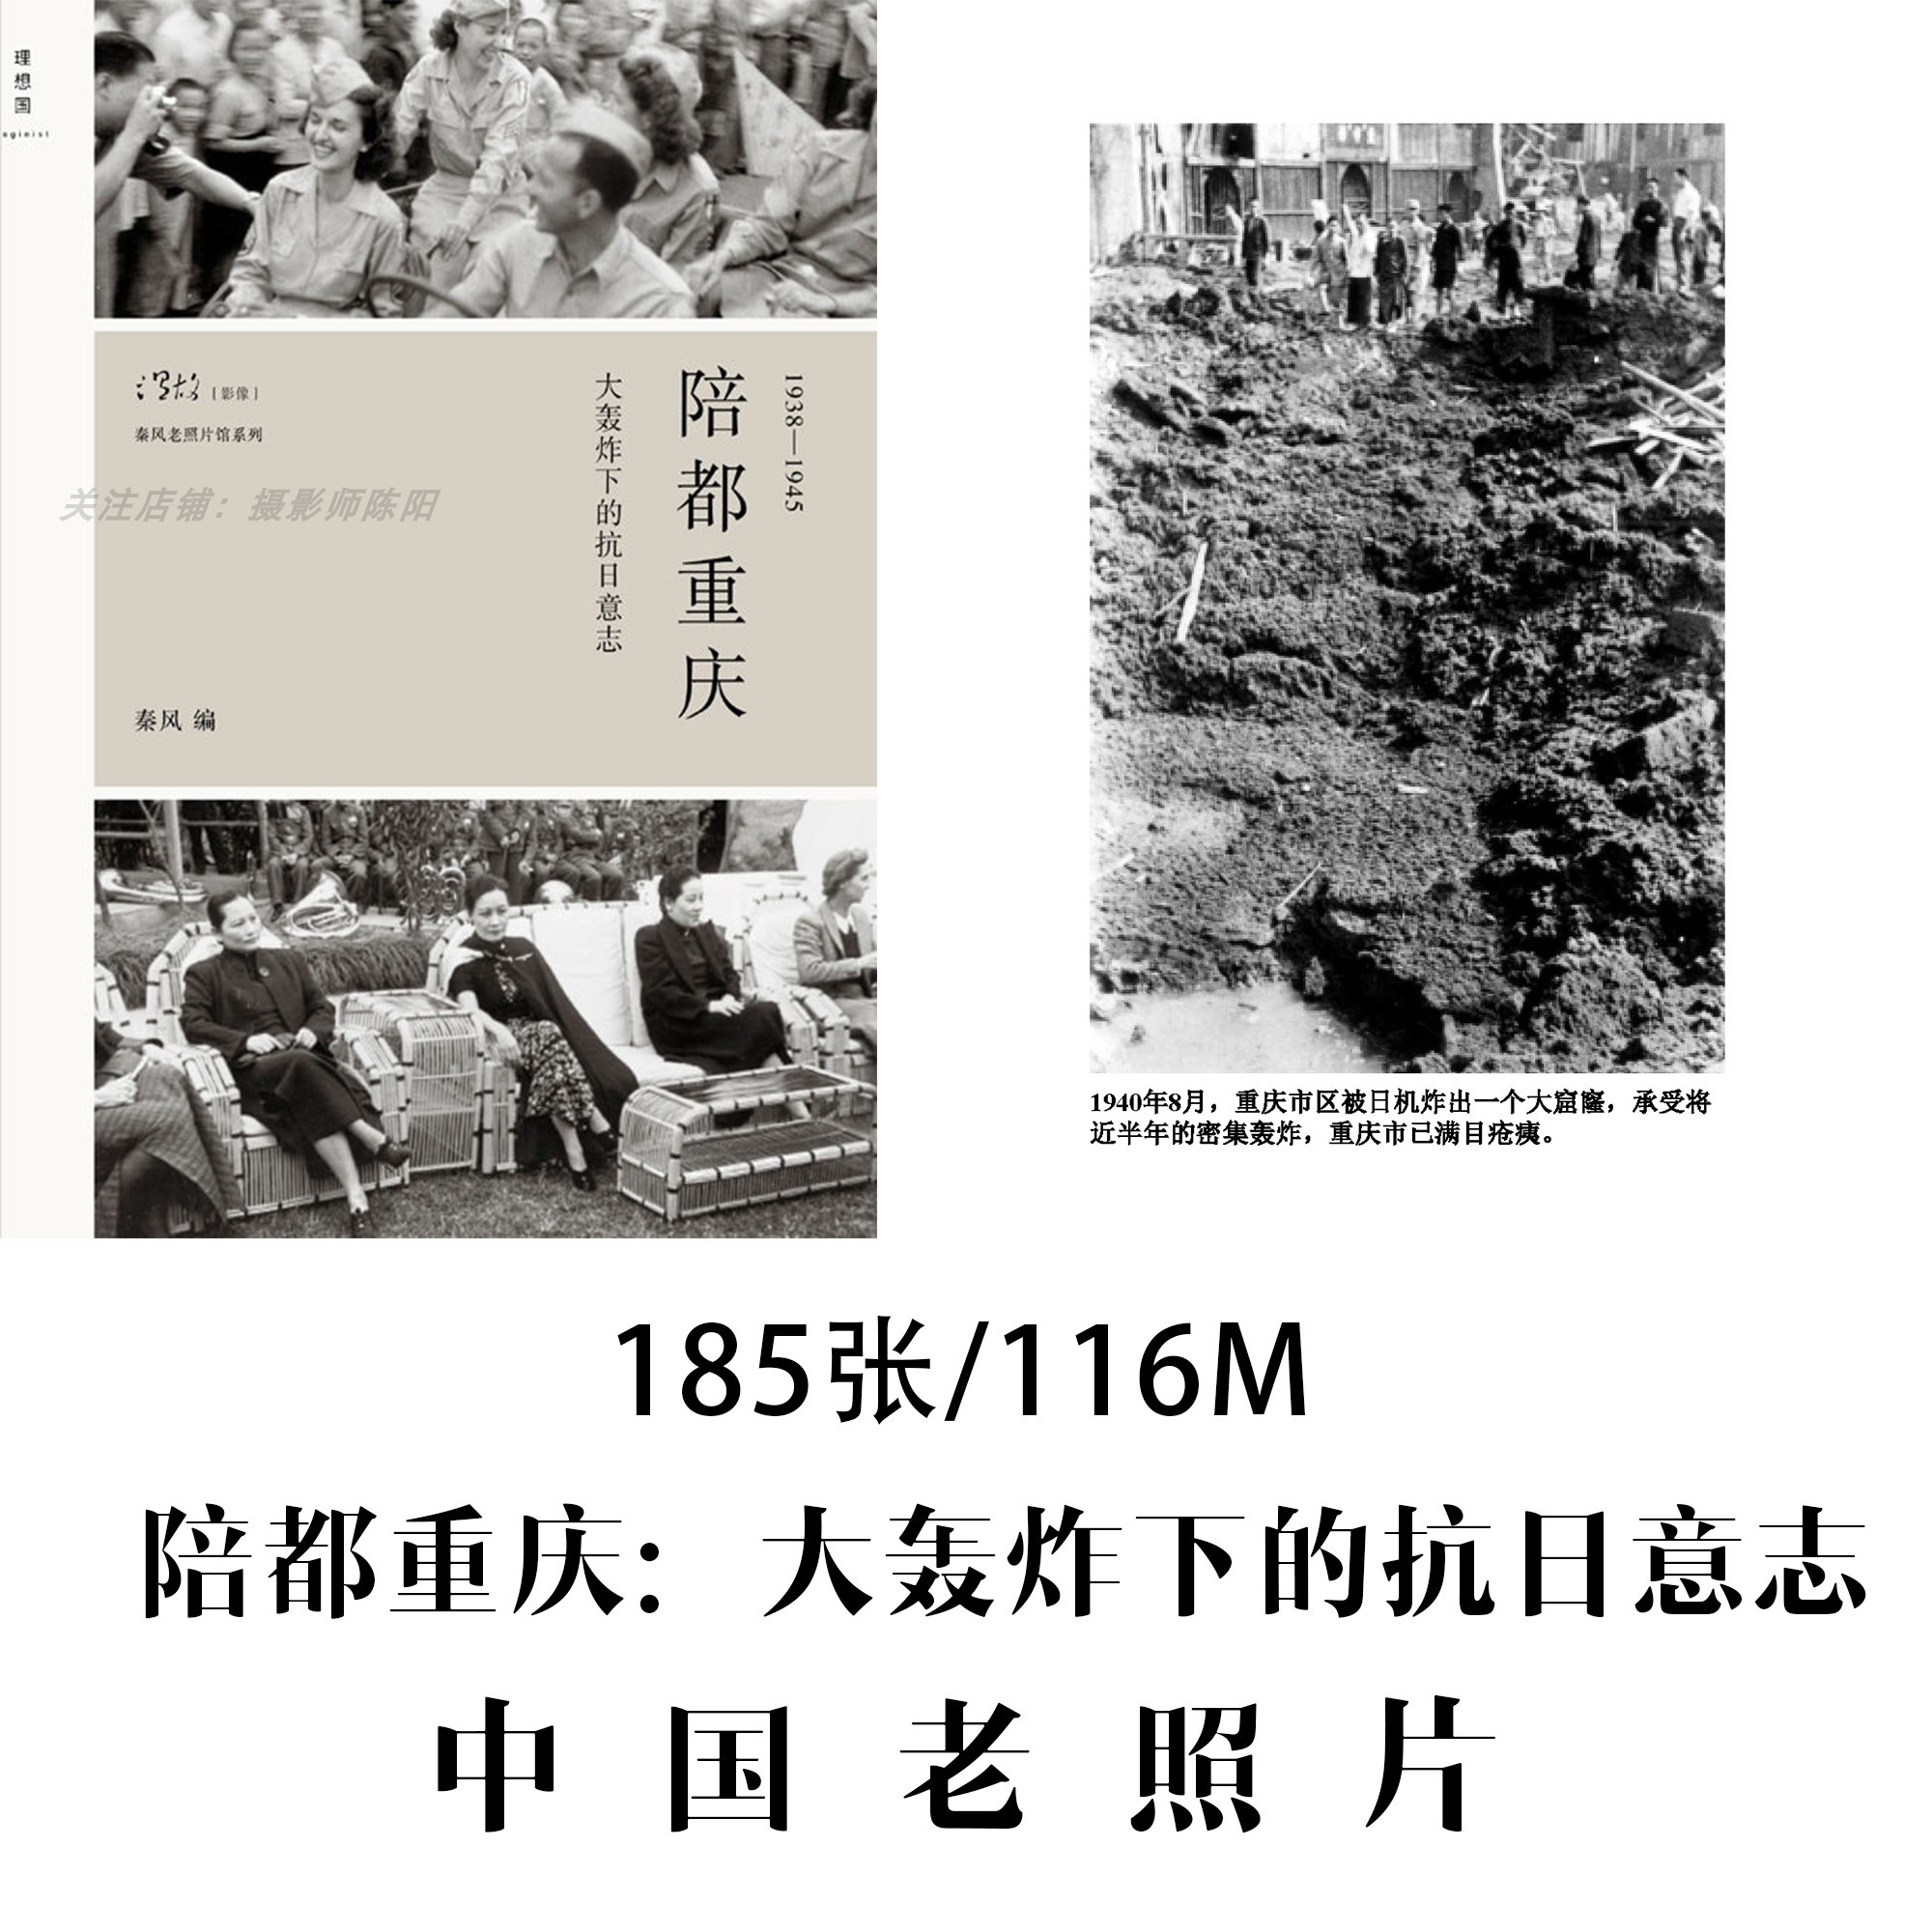 陪都重庆大轰炸下的抗日意志中国老照片摄影作品电子素材